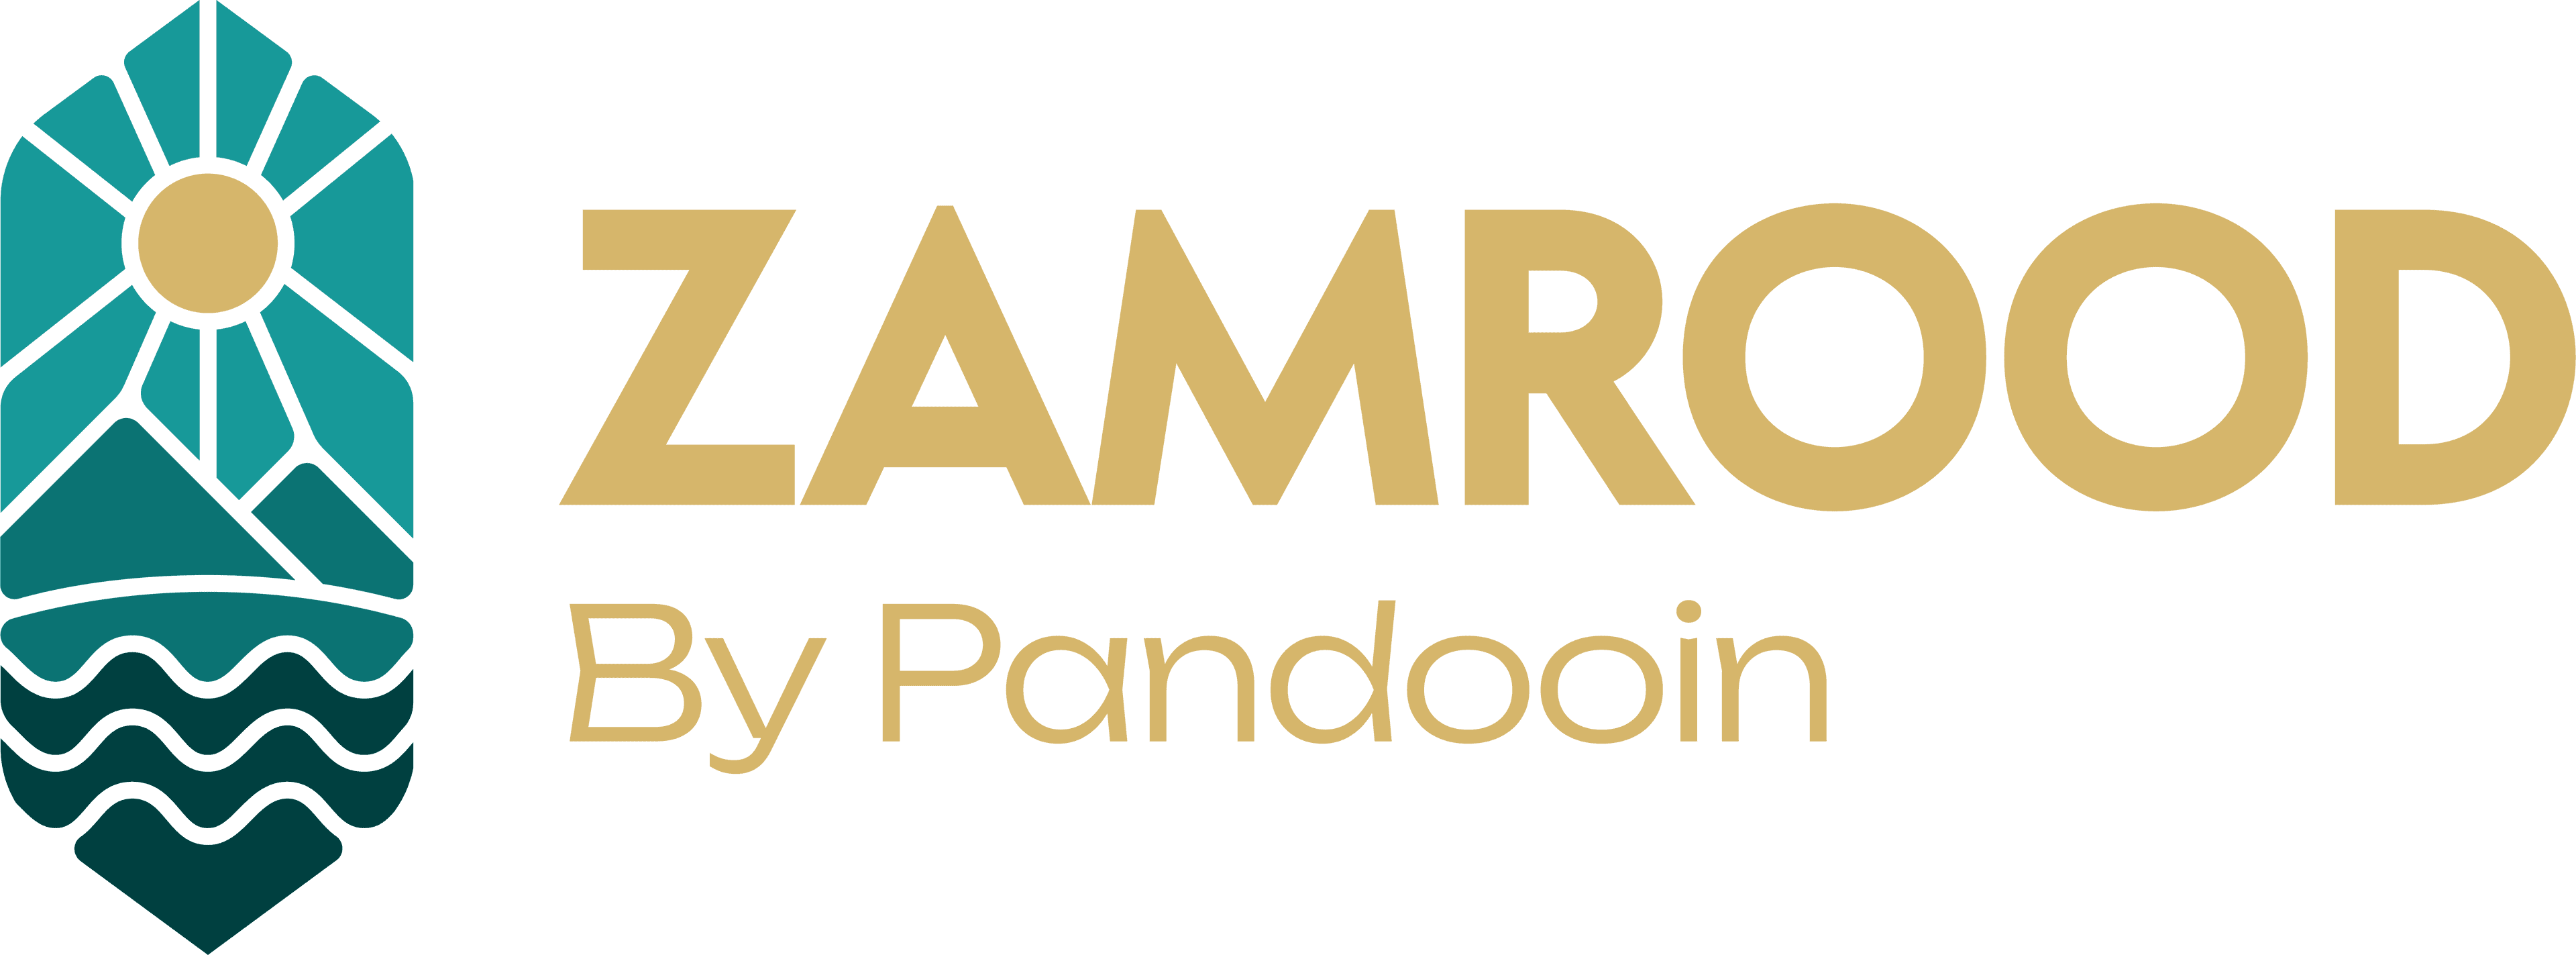 Pandooin Zamrood Logo